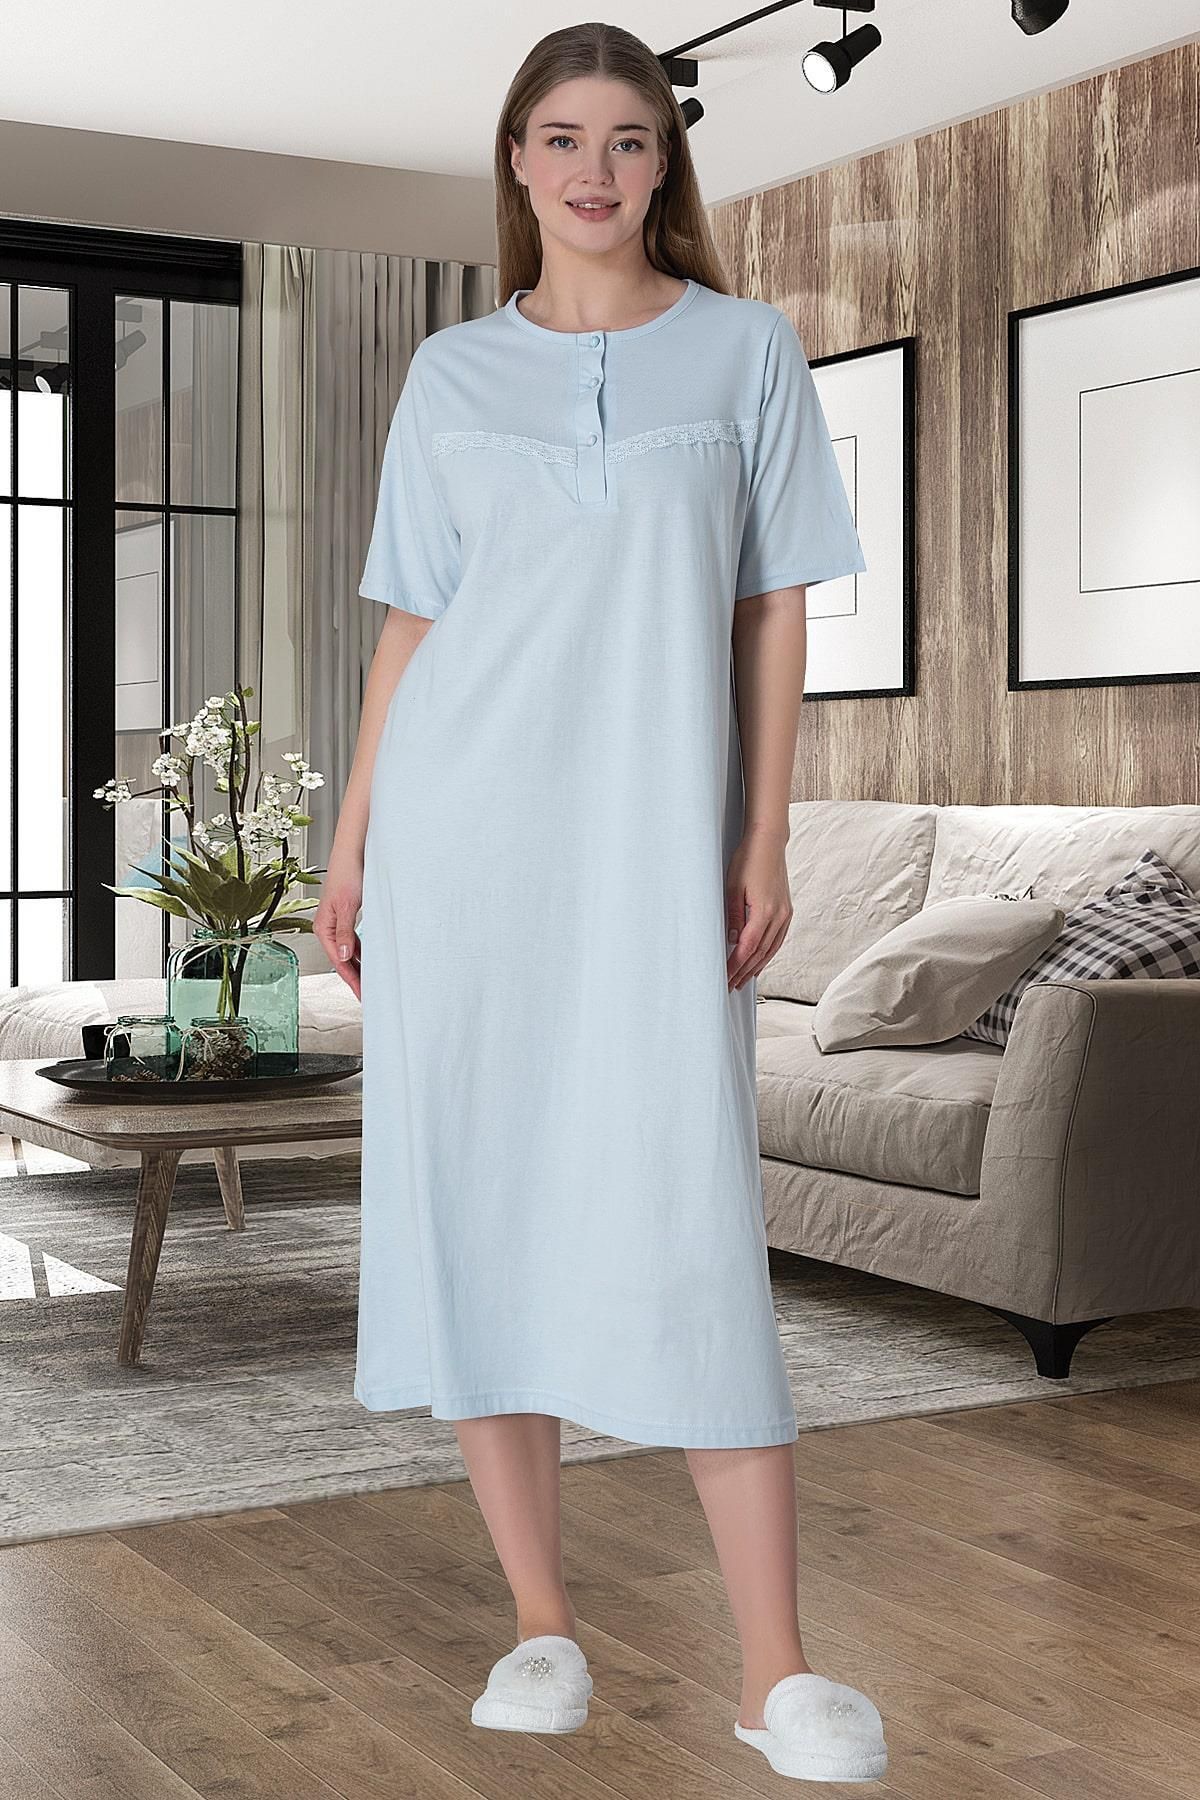 Pijamadam Kadın Mavi Büyük Beden Pamuklu Gecelik